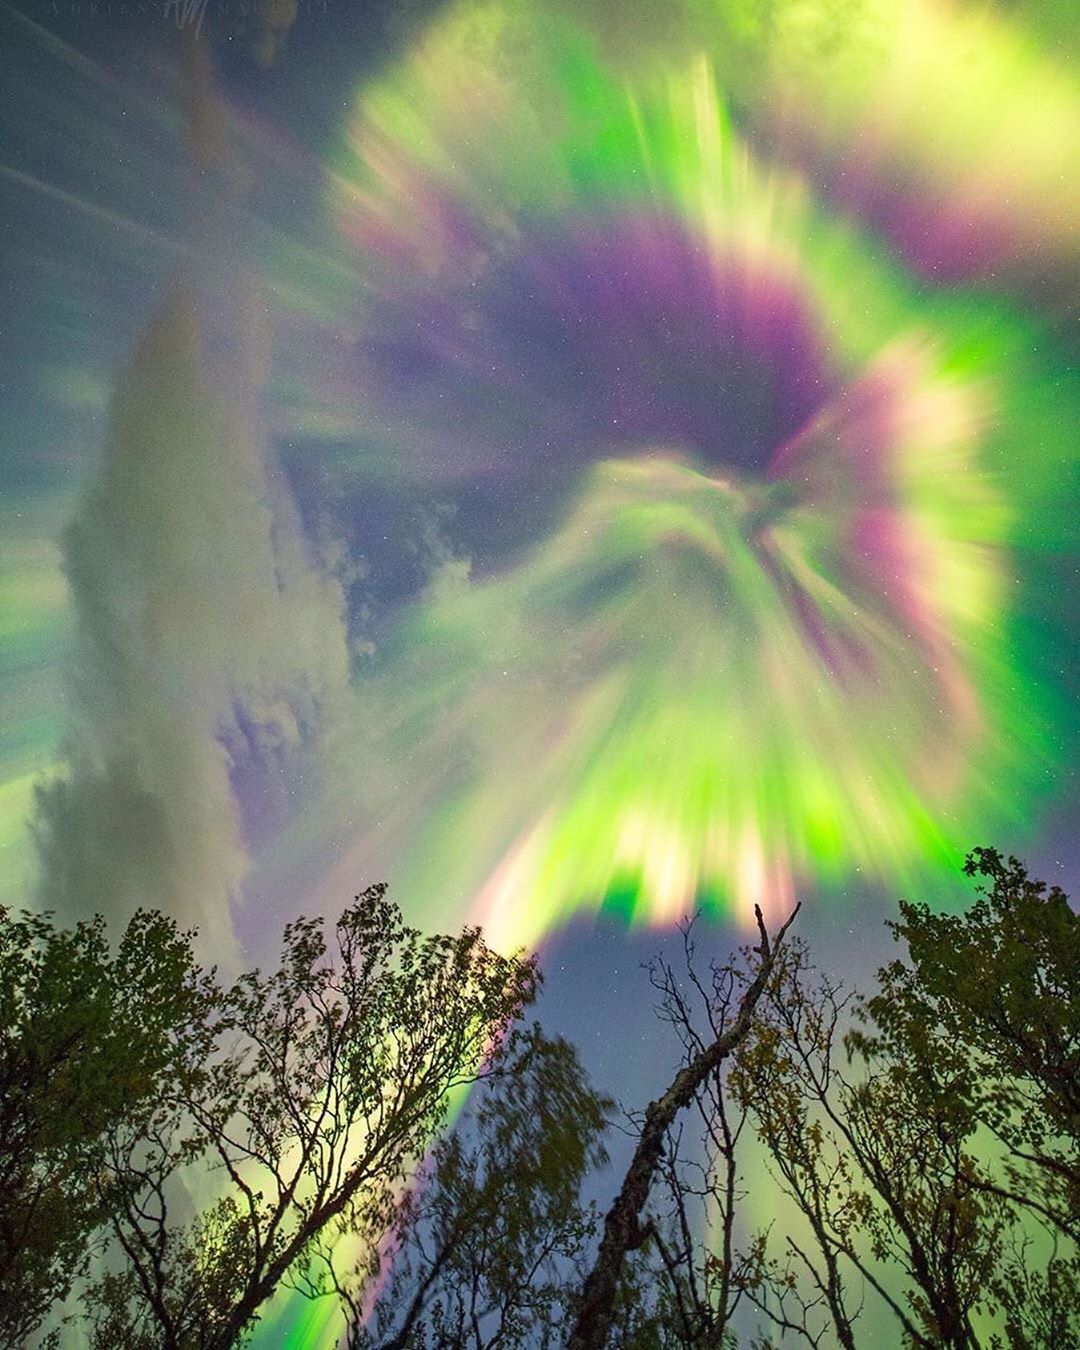 La Aurora es un increíble espectáculo de luces provocado por las colisiones entre las partículas cargadas eléctricamente liberadas por el sol que entran en la atmósfera terrestre y chocan con gases como el oxígeno y el nitrógeno. Las luces se ven alrededor de los polos magnéticos de los hemisferios norte y sur.